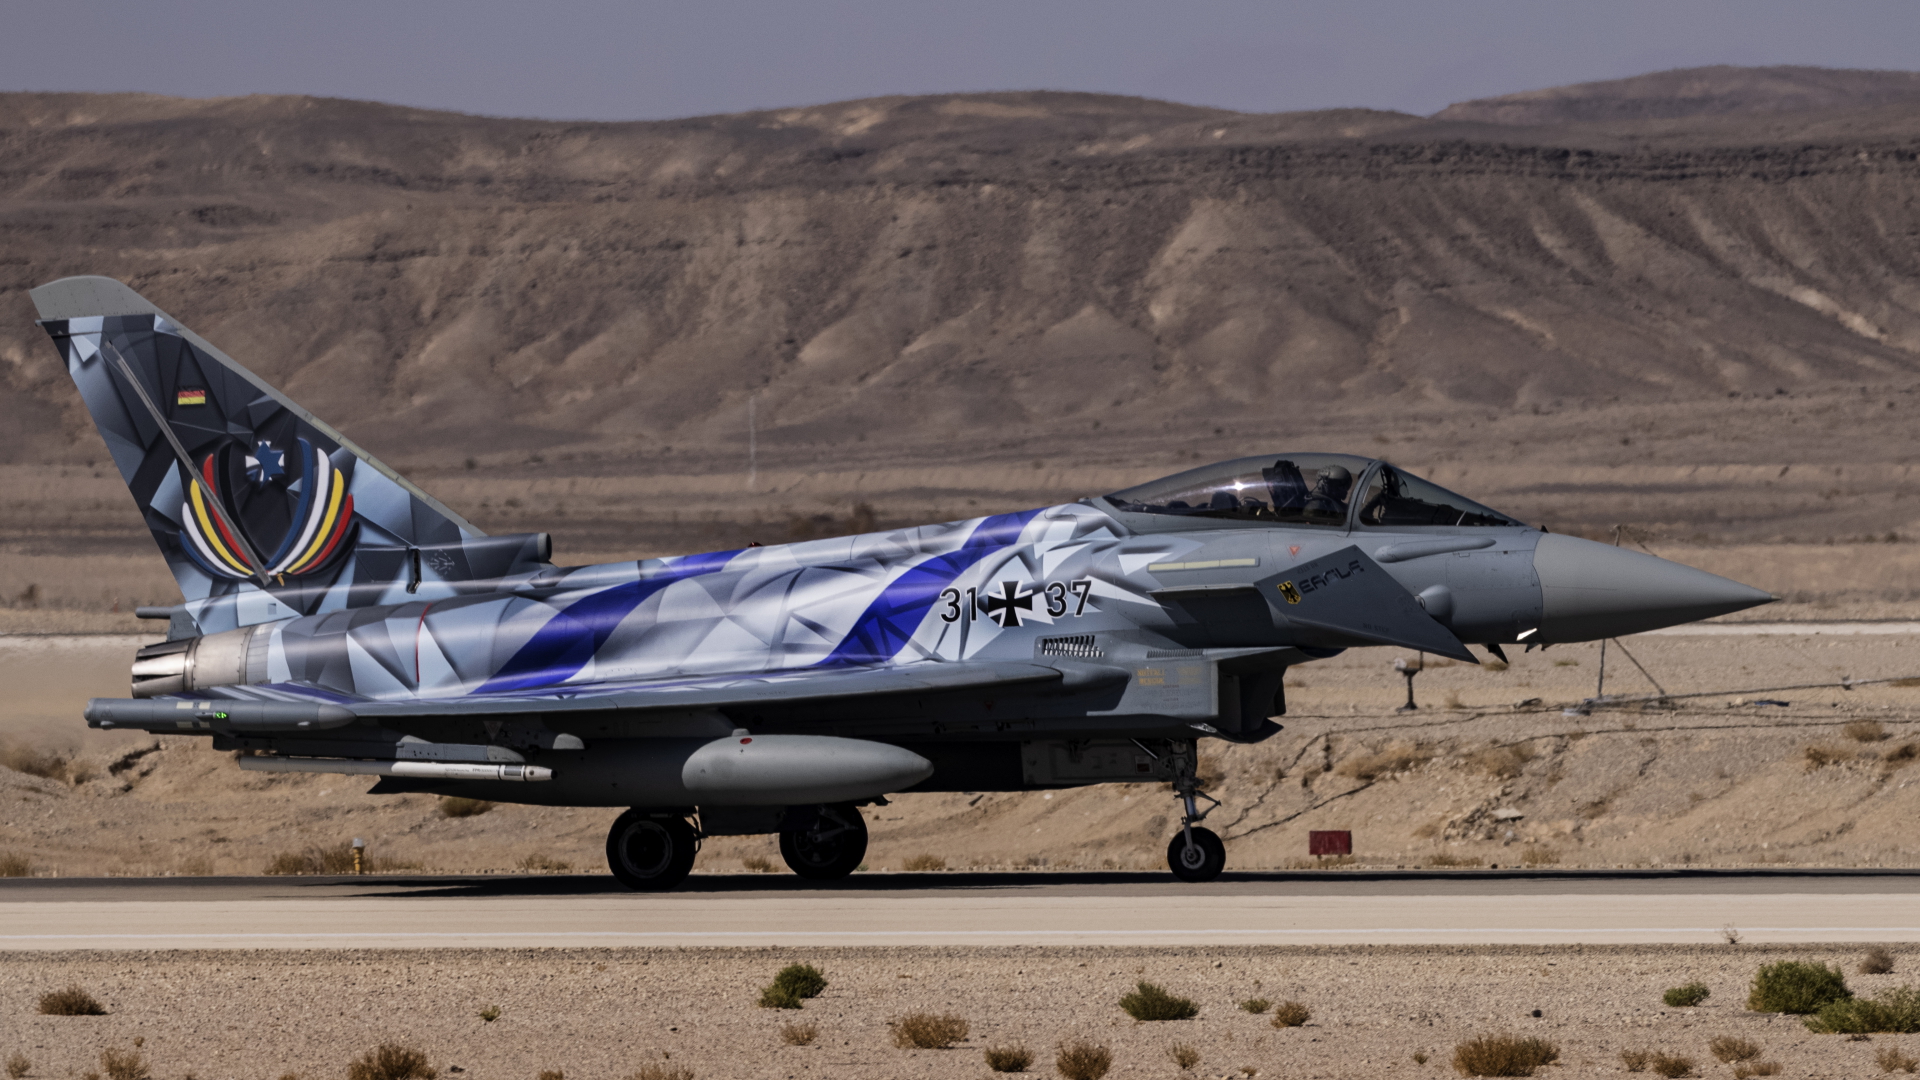 Ein mit der Flagge Israels und Deutschlands beklebter Eurofighter landet auf dem Stützpunkt Ovda in der Negev-Wüste (Israel) | dpa